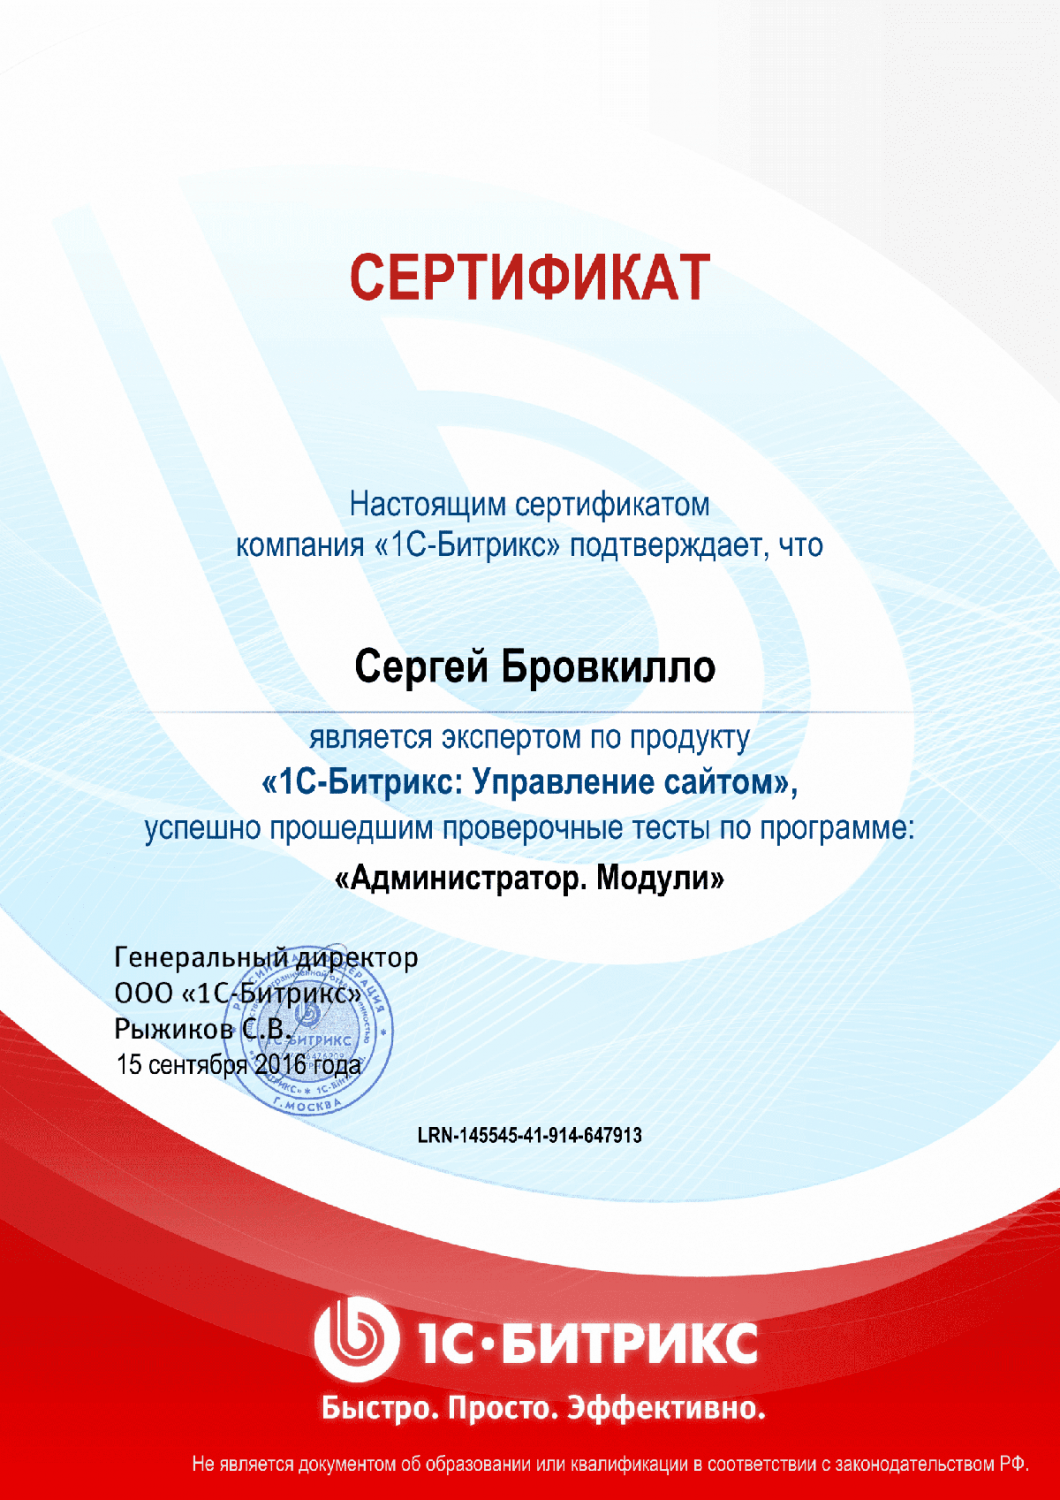 Сертификат эксперта по программе "Администратор. Модули" в Мурманска